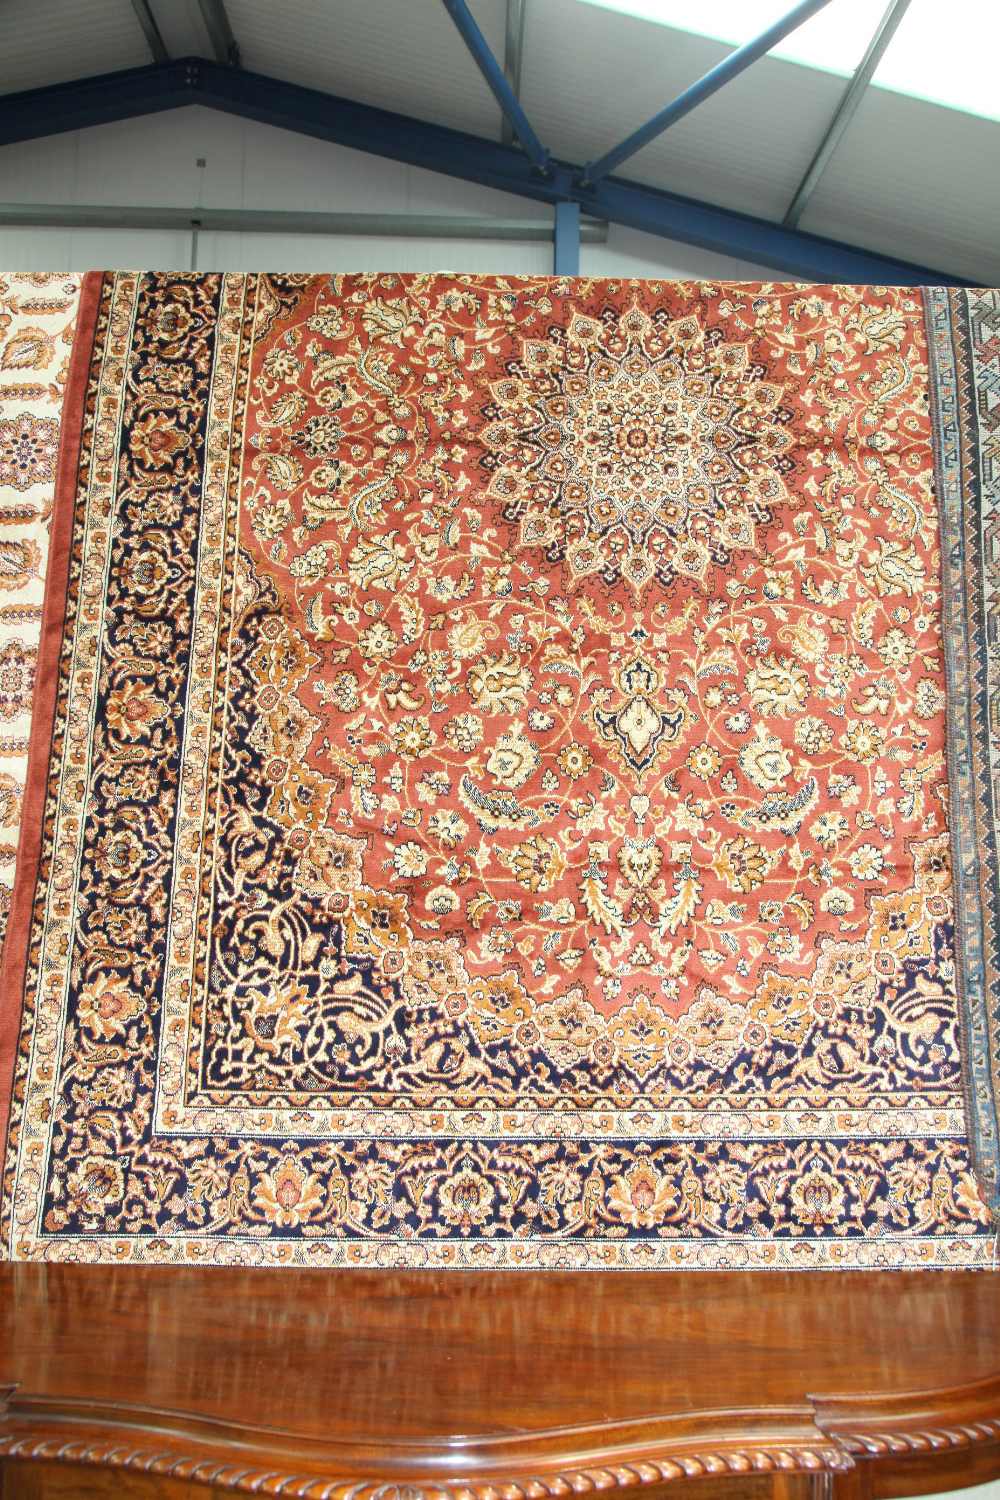 A Keshan style carpet. 2.3m x 1.6